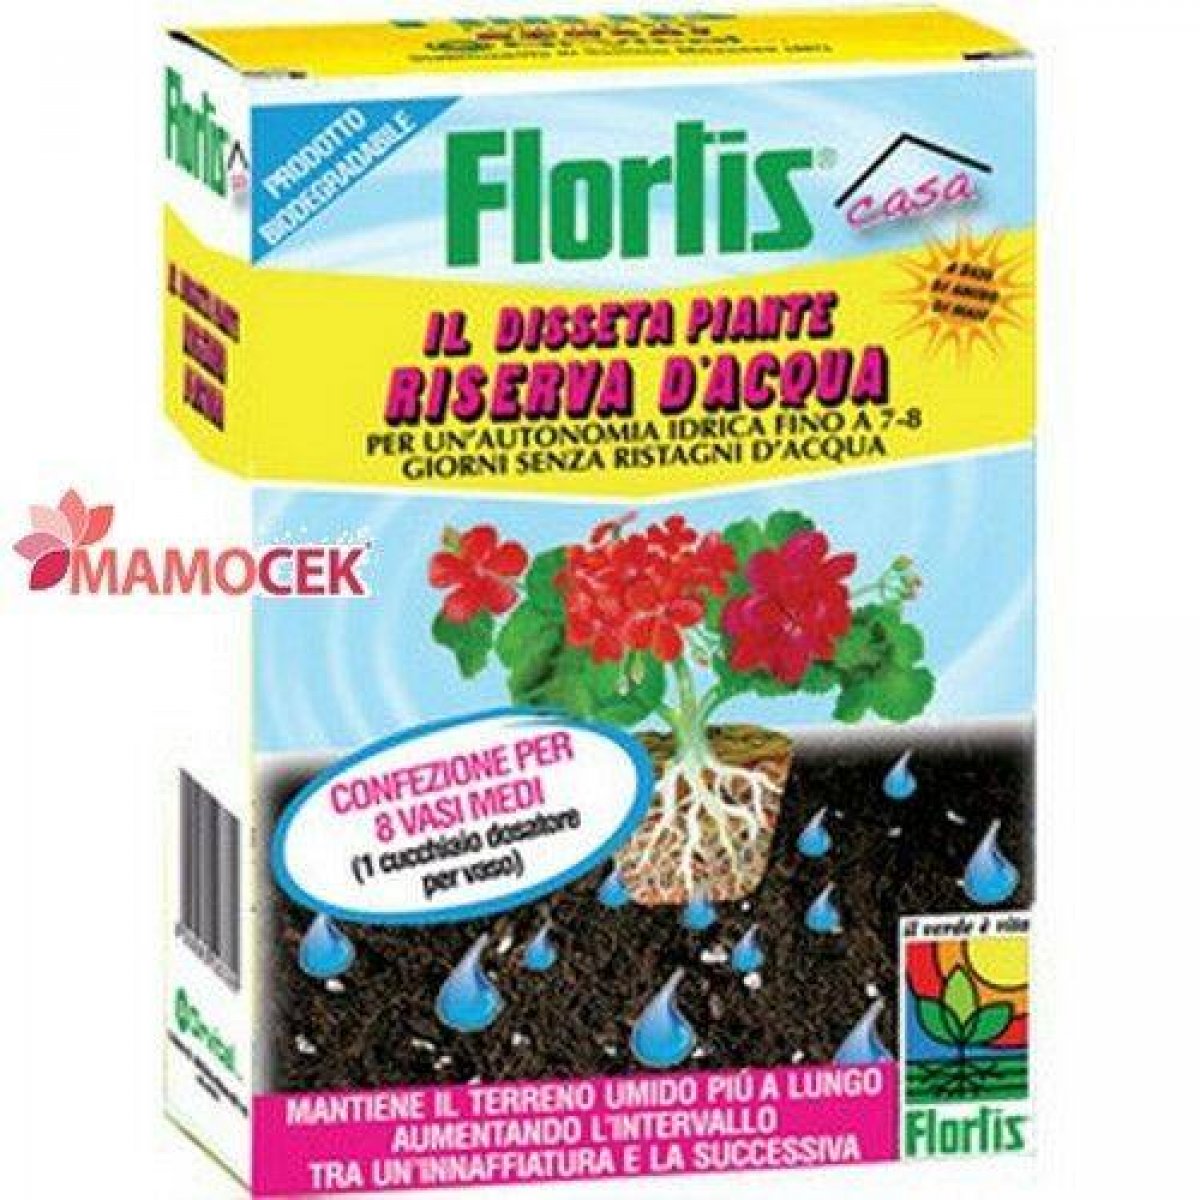 FLORTIS Il disseta piante granulare. Granuli solubili, riserva d'acqua per piante in vaso conf. 50 gr